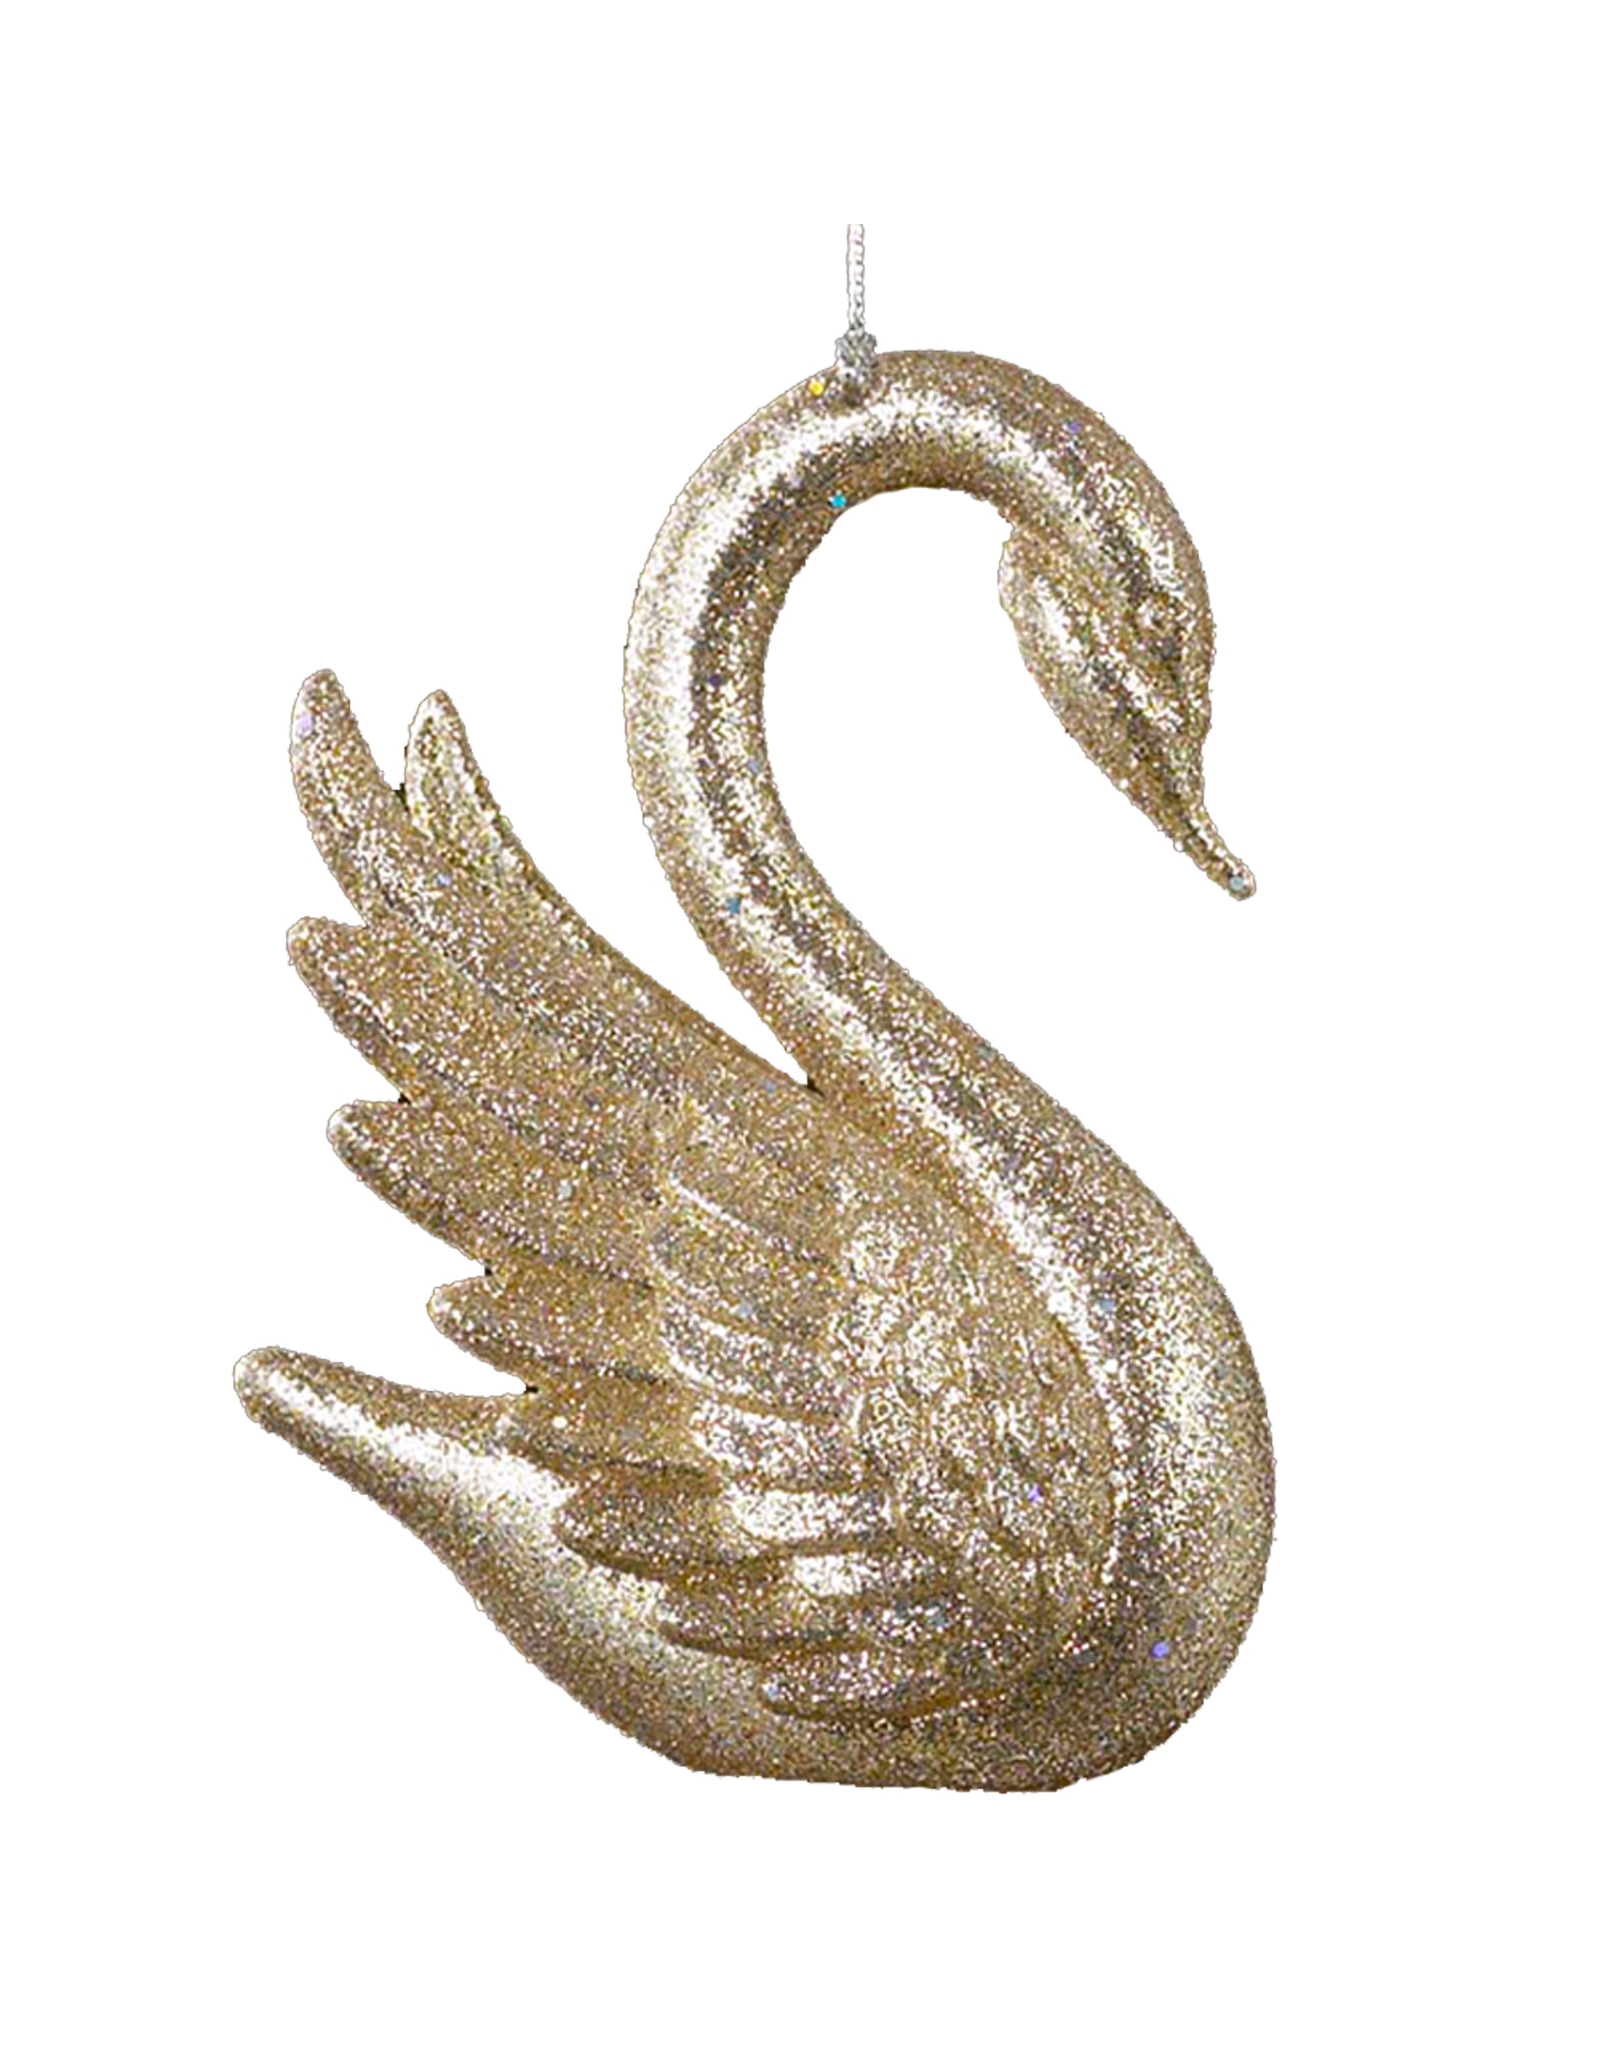 Kurt Adler Gold Glittered Swan Christmas Ornament